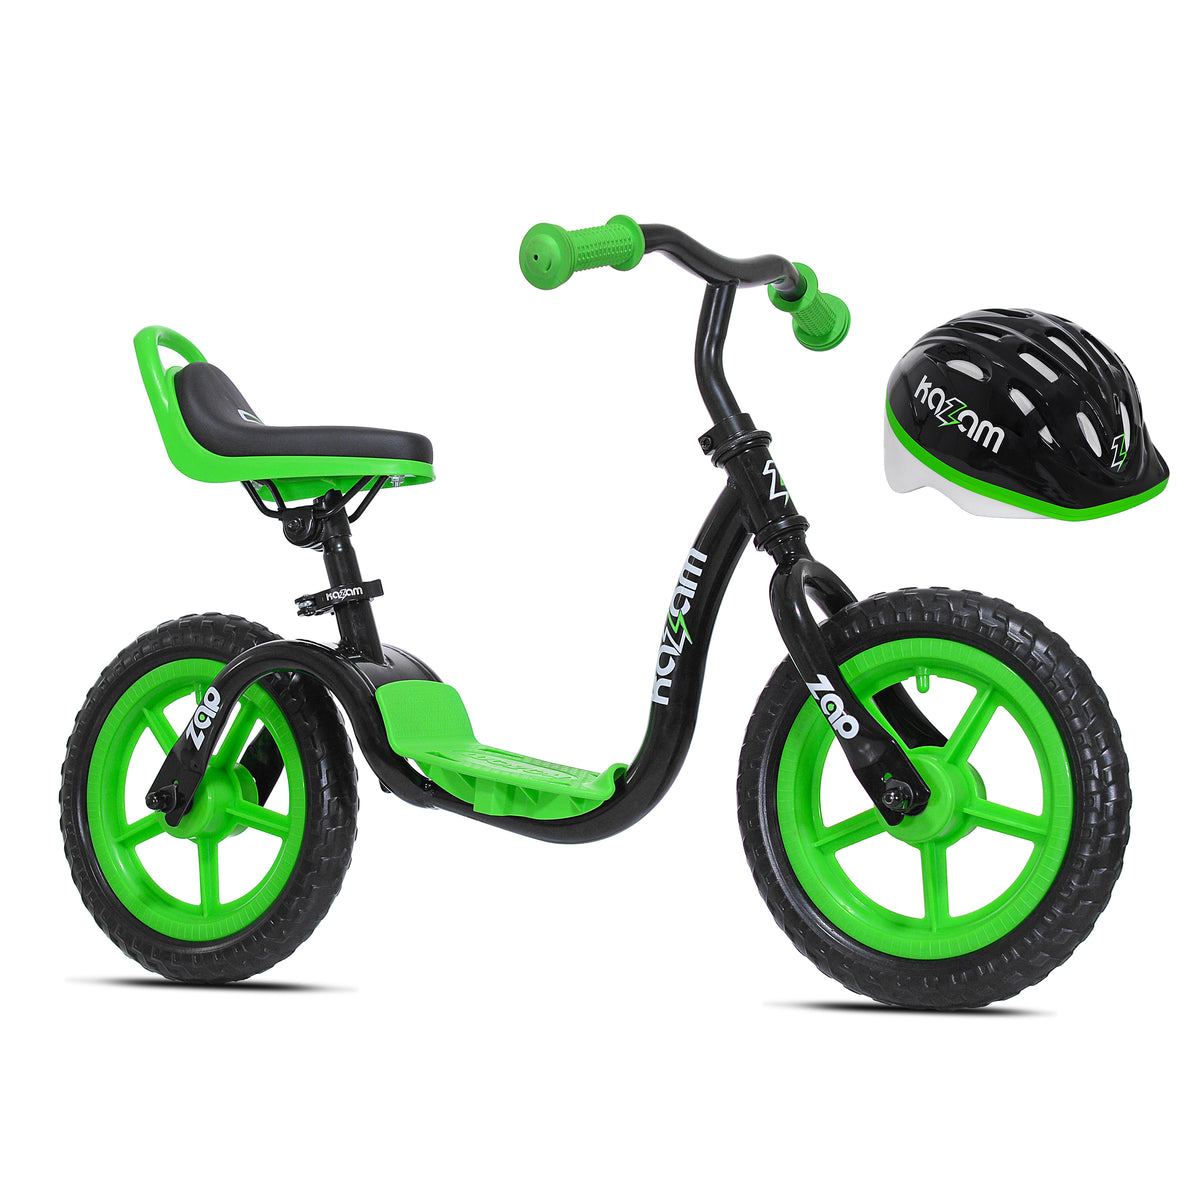 12" Kazam Zap Combo Pack | Balance Bike + Helmet for Kids Ages 2-4